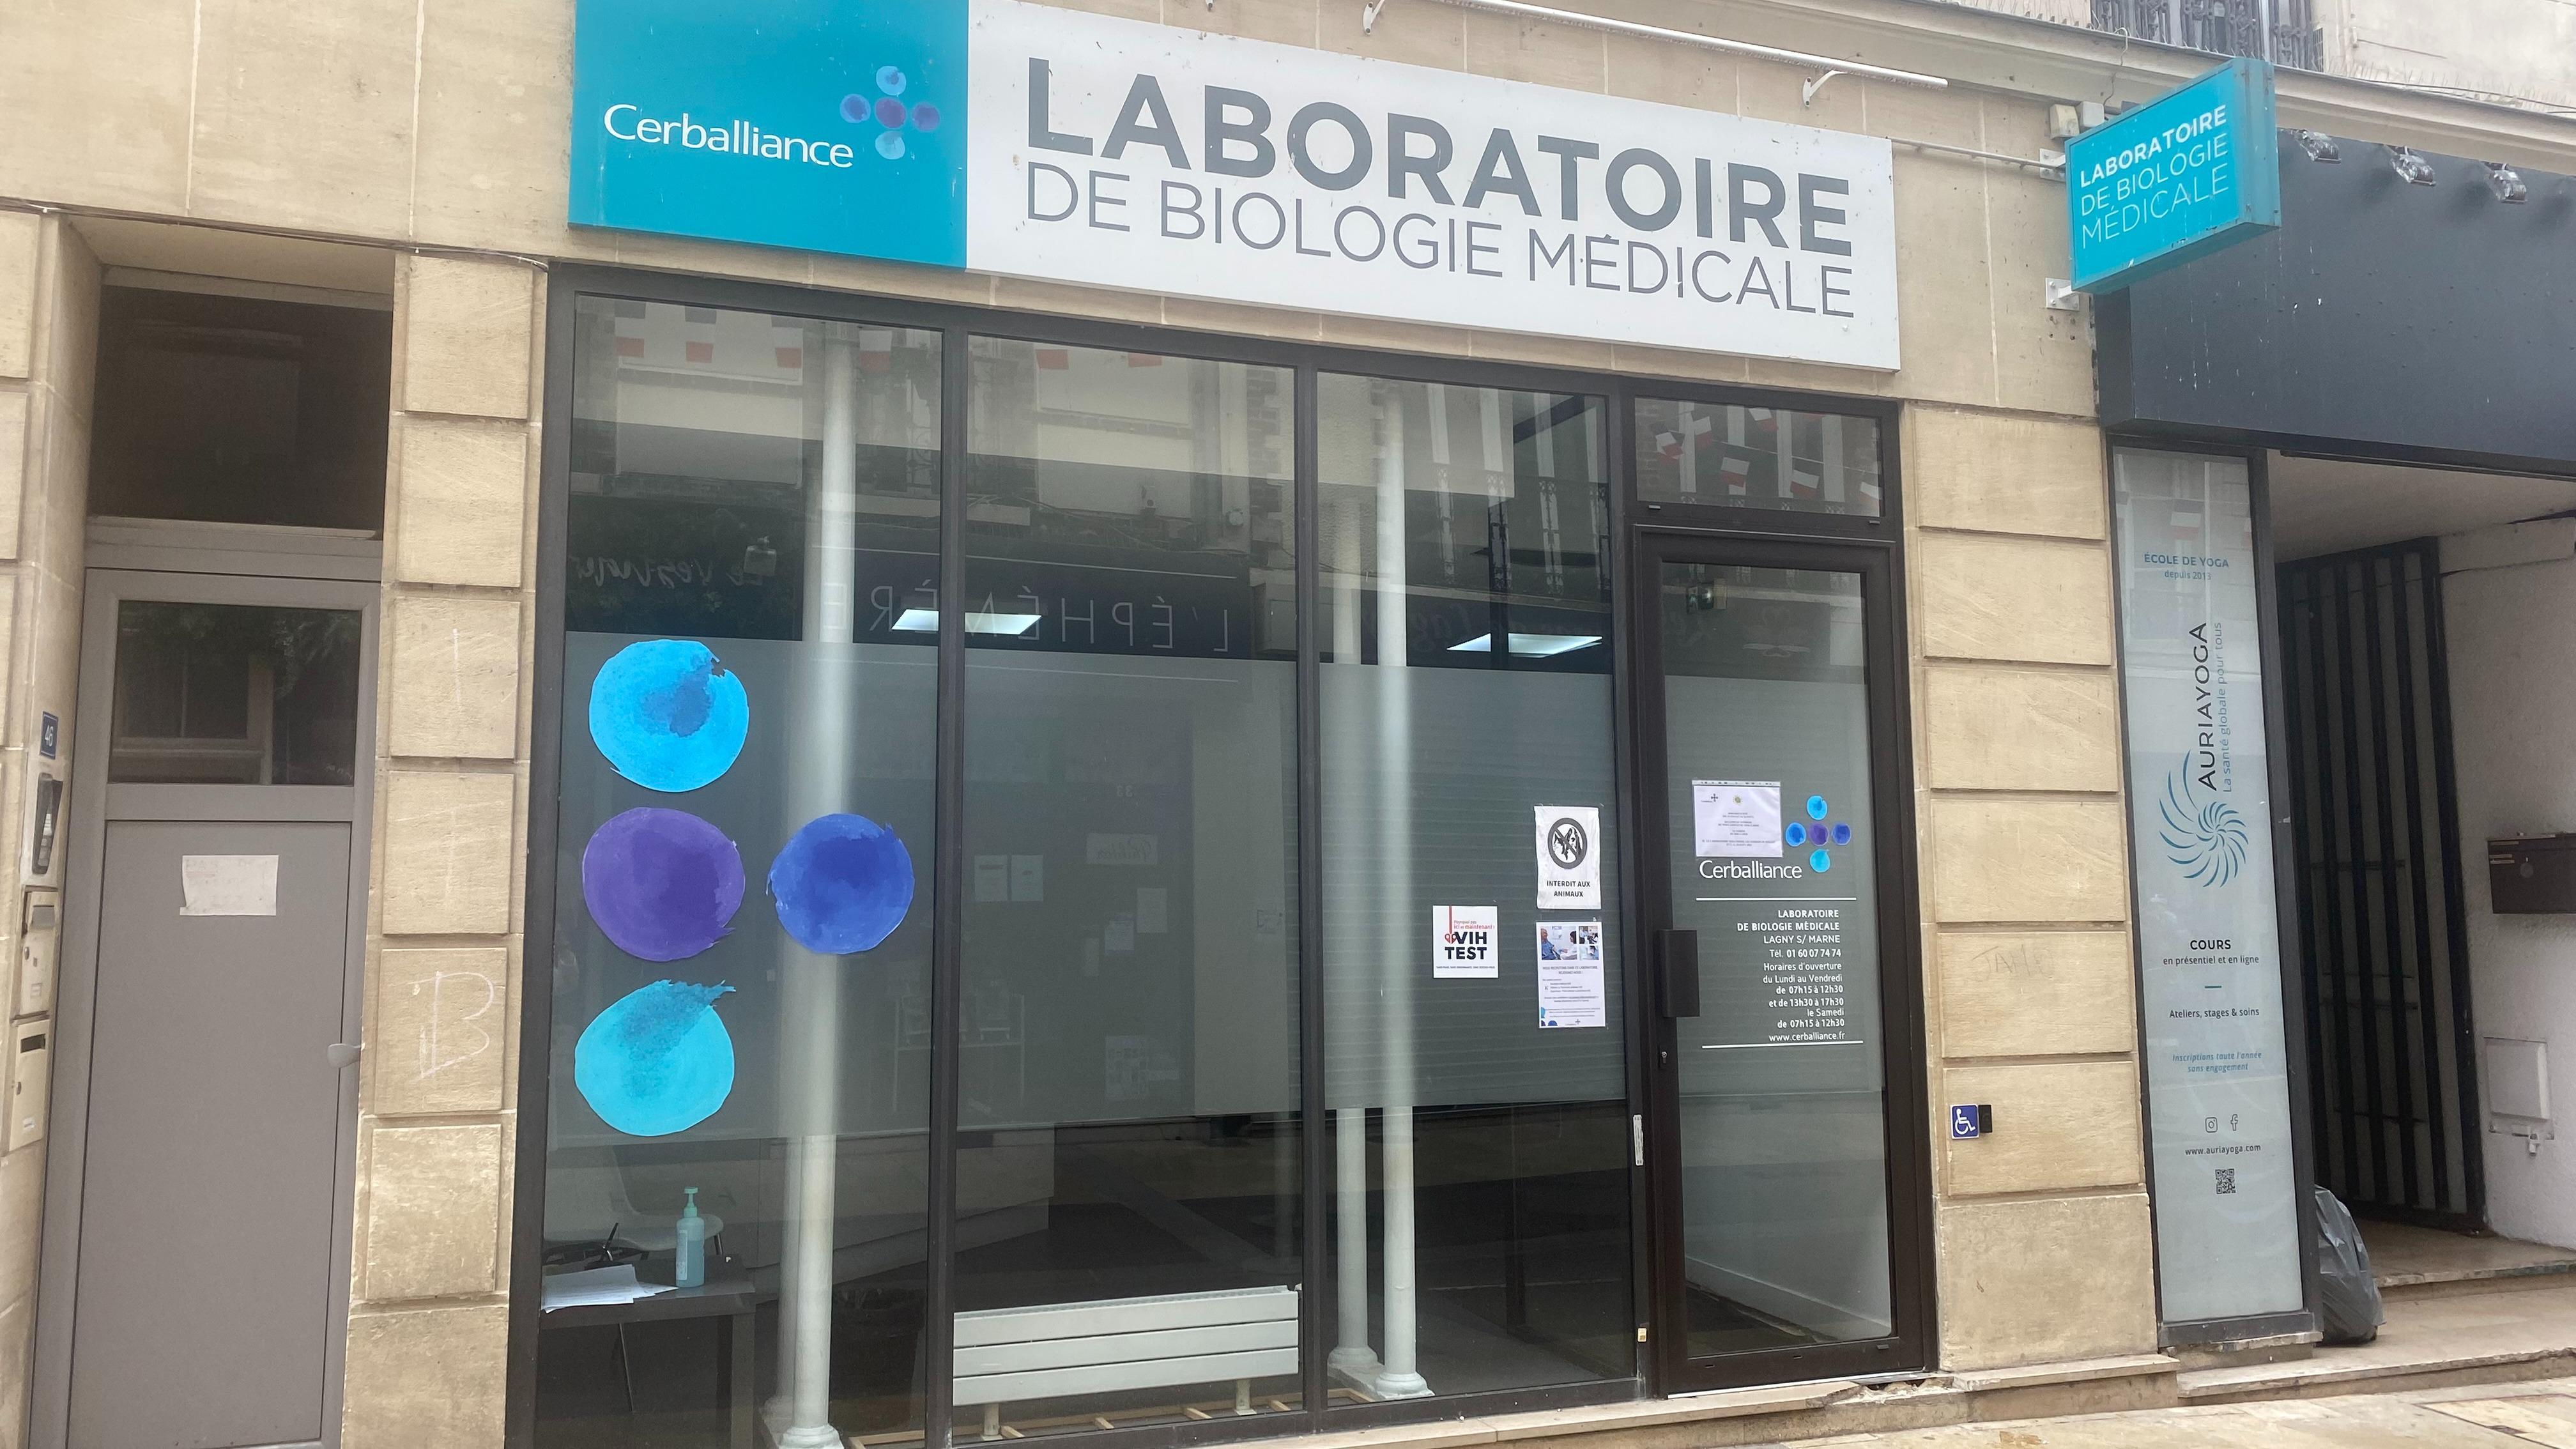 Laboratoire De Biologie Médicale - Lagny-sur-marne - Cerballiance Lagny Sur Marne